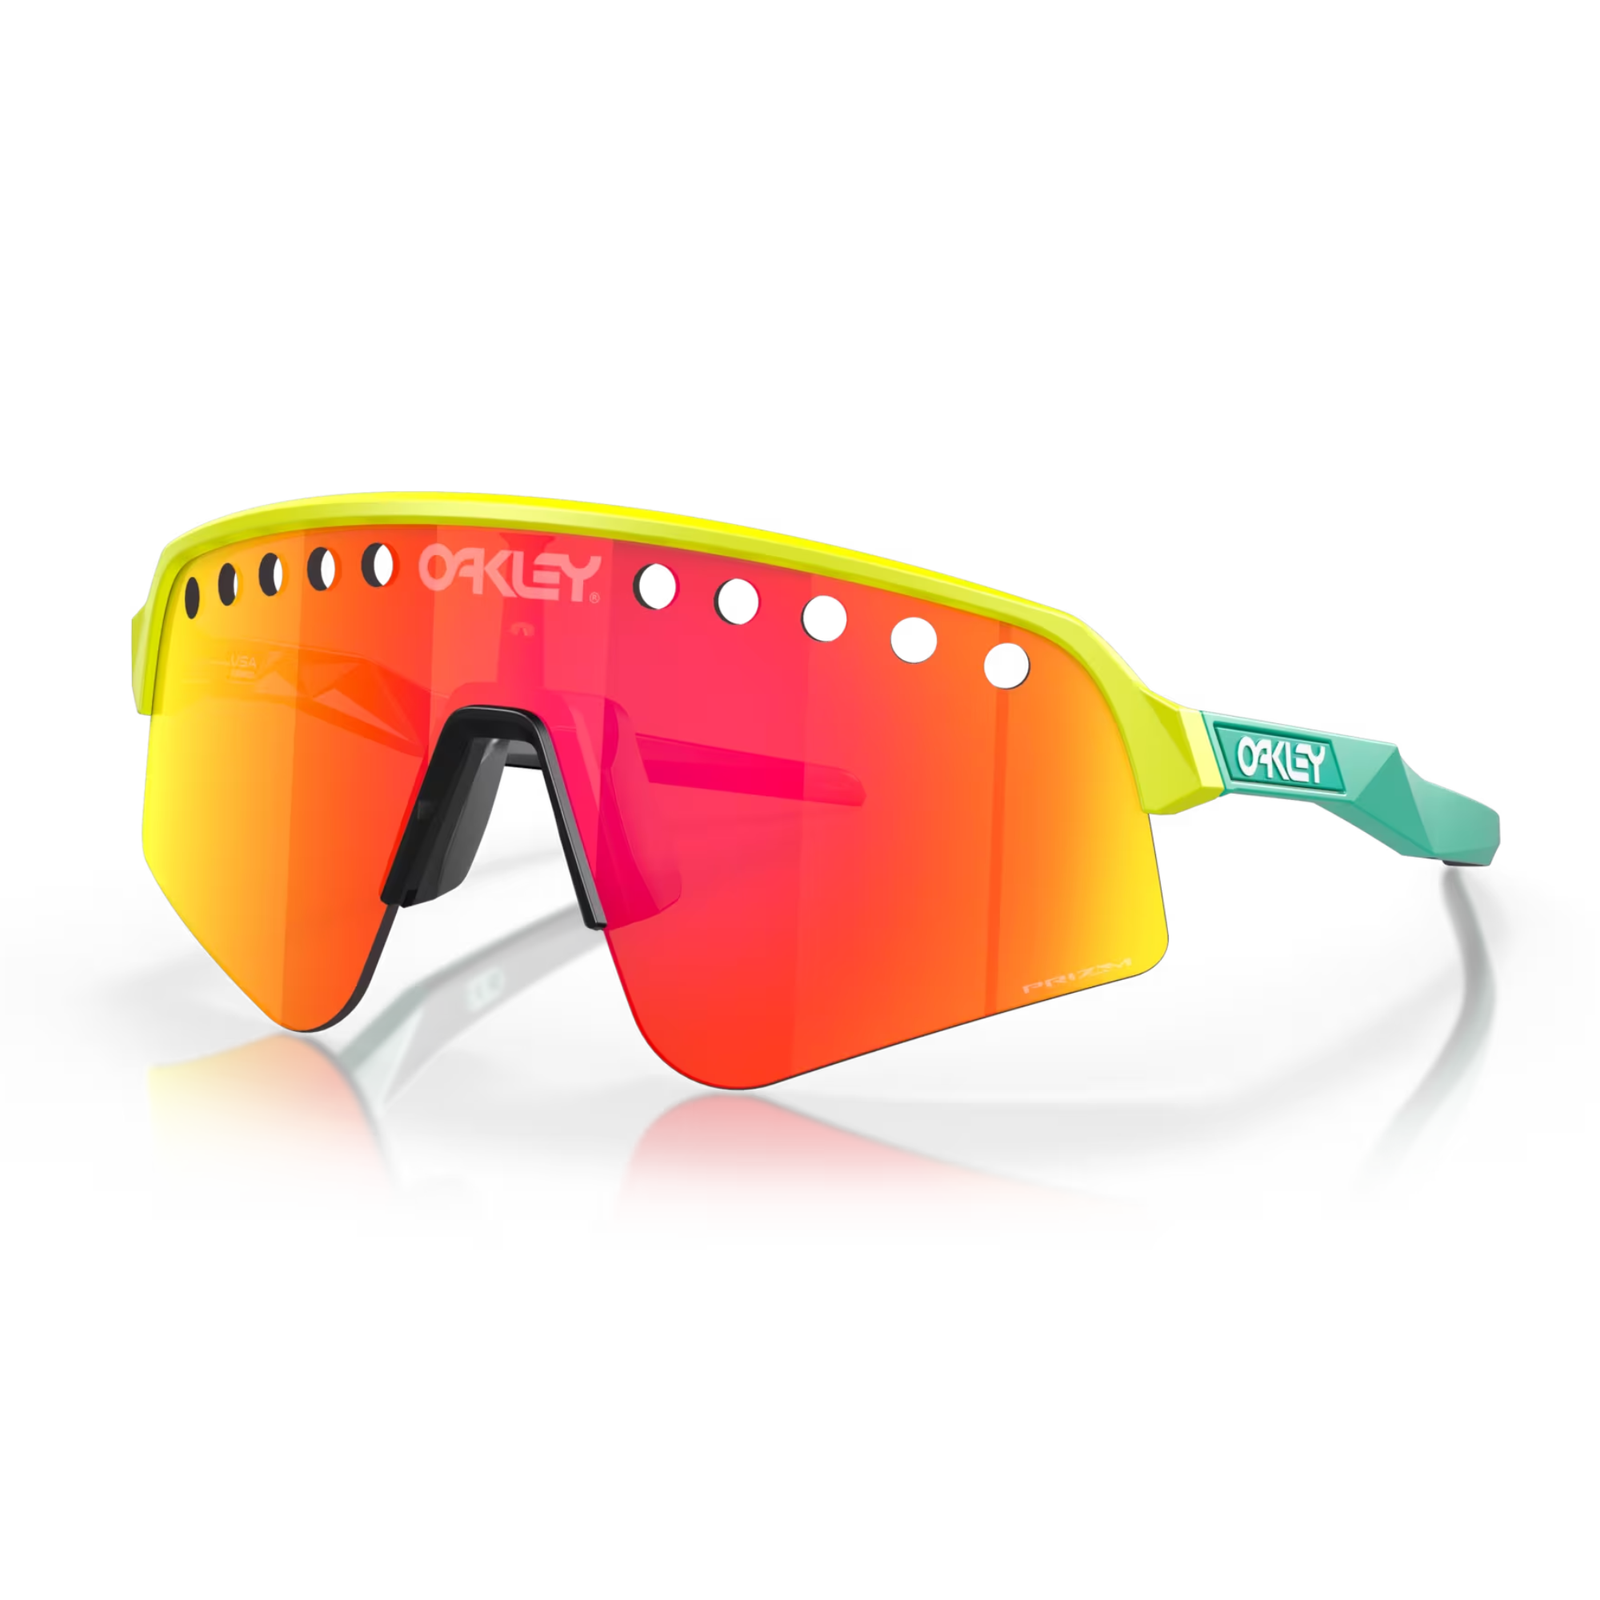 Sutro Lite Sweep Tennis Sunglasses - Vented Lenses